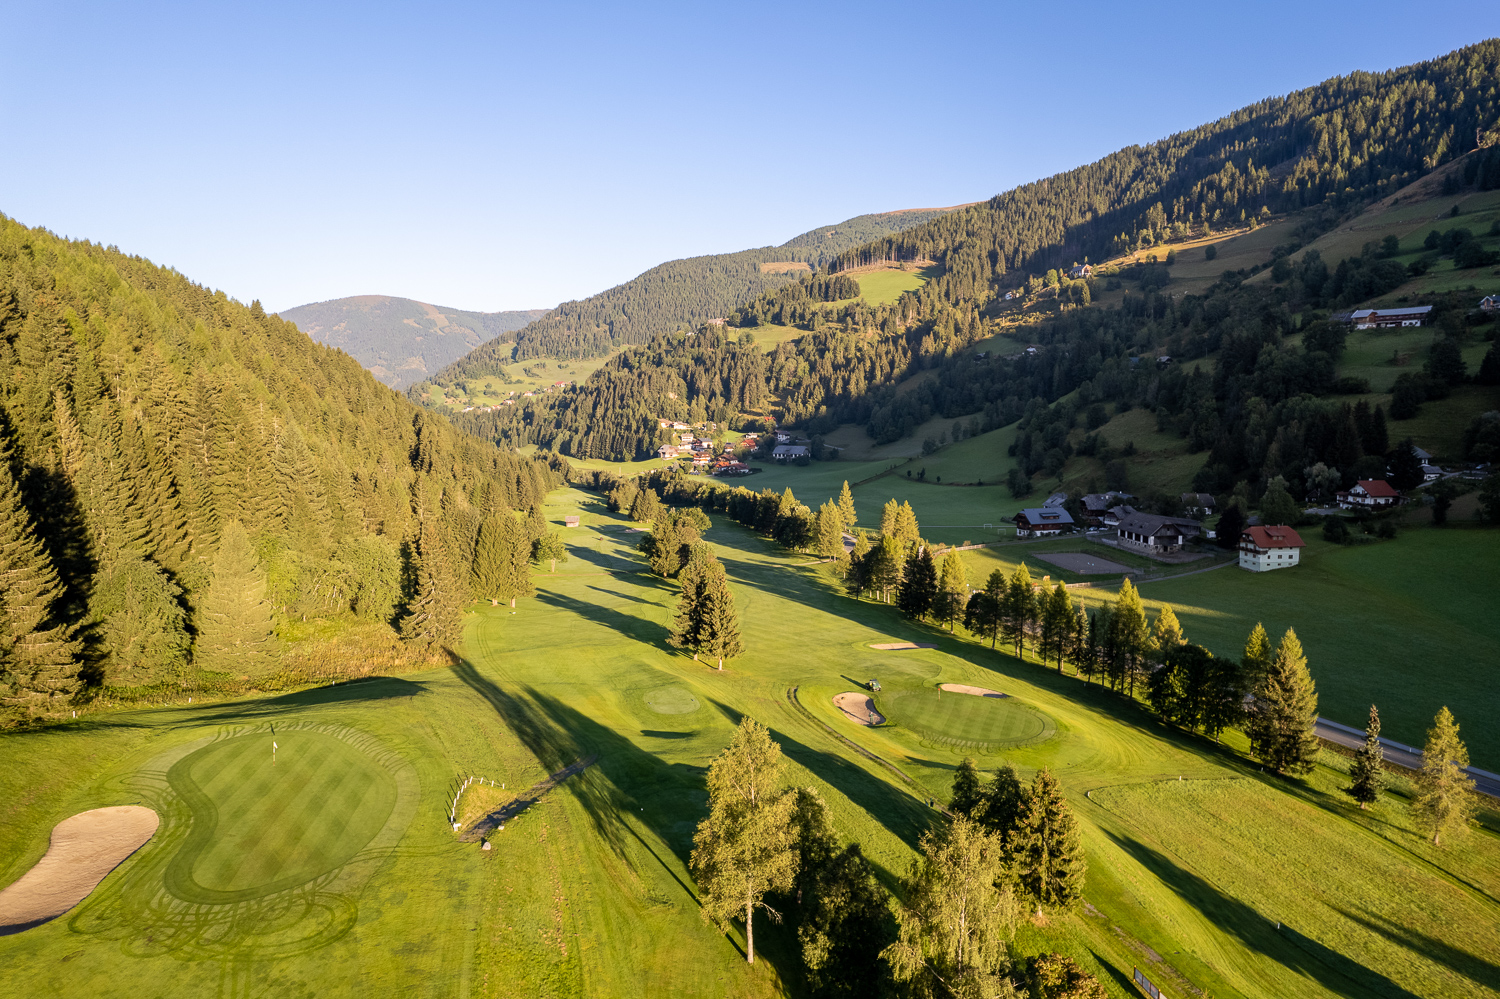 Wakacje z golfem w Karyntii: Pole golfowe Bad Kleinkirchheim - 18-dołkowe pole golfowe w pięknych karynckich górach Nockberge